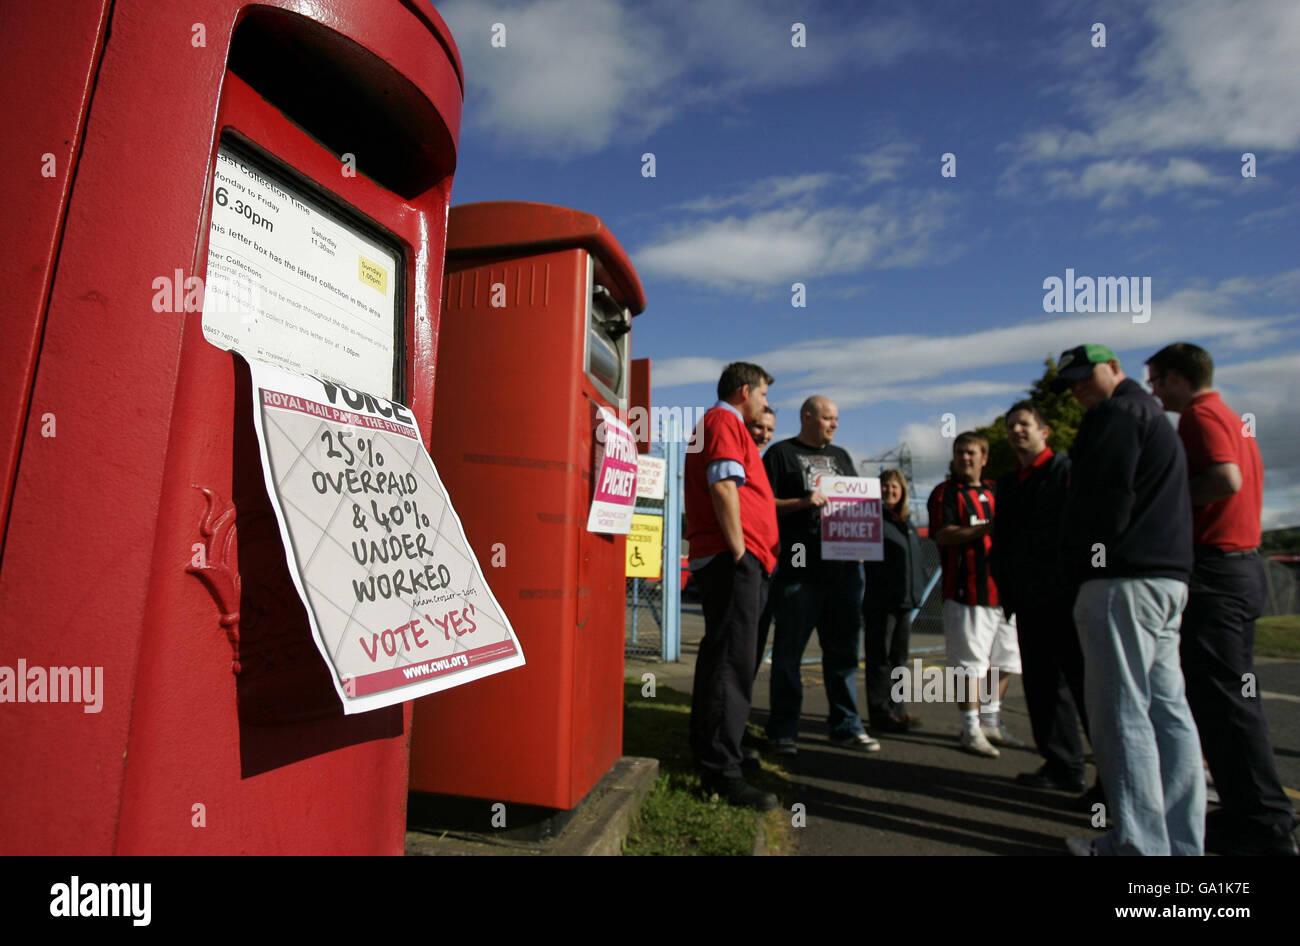 National postal workers strike Stock Photo Alamy